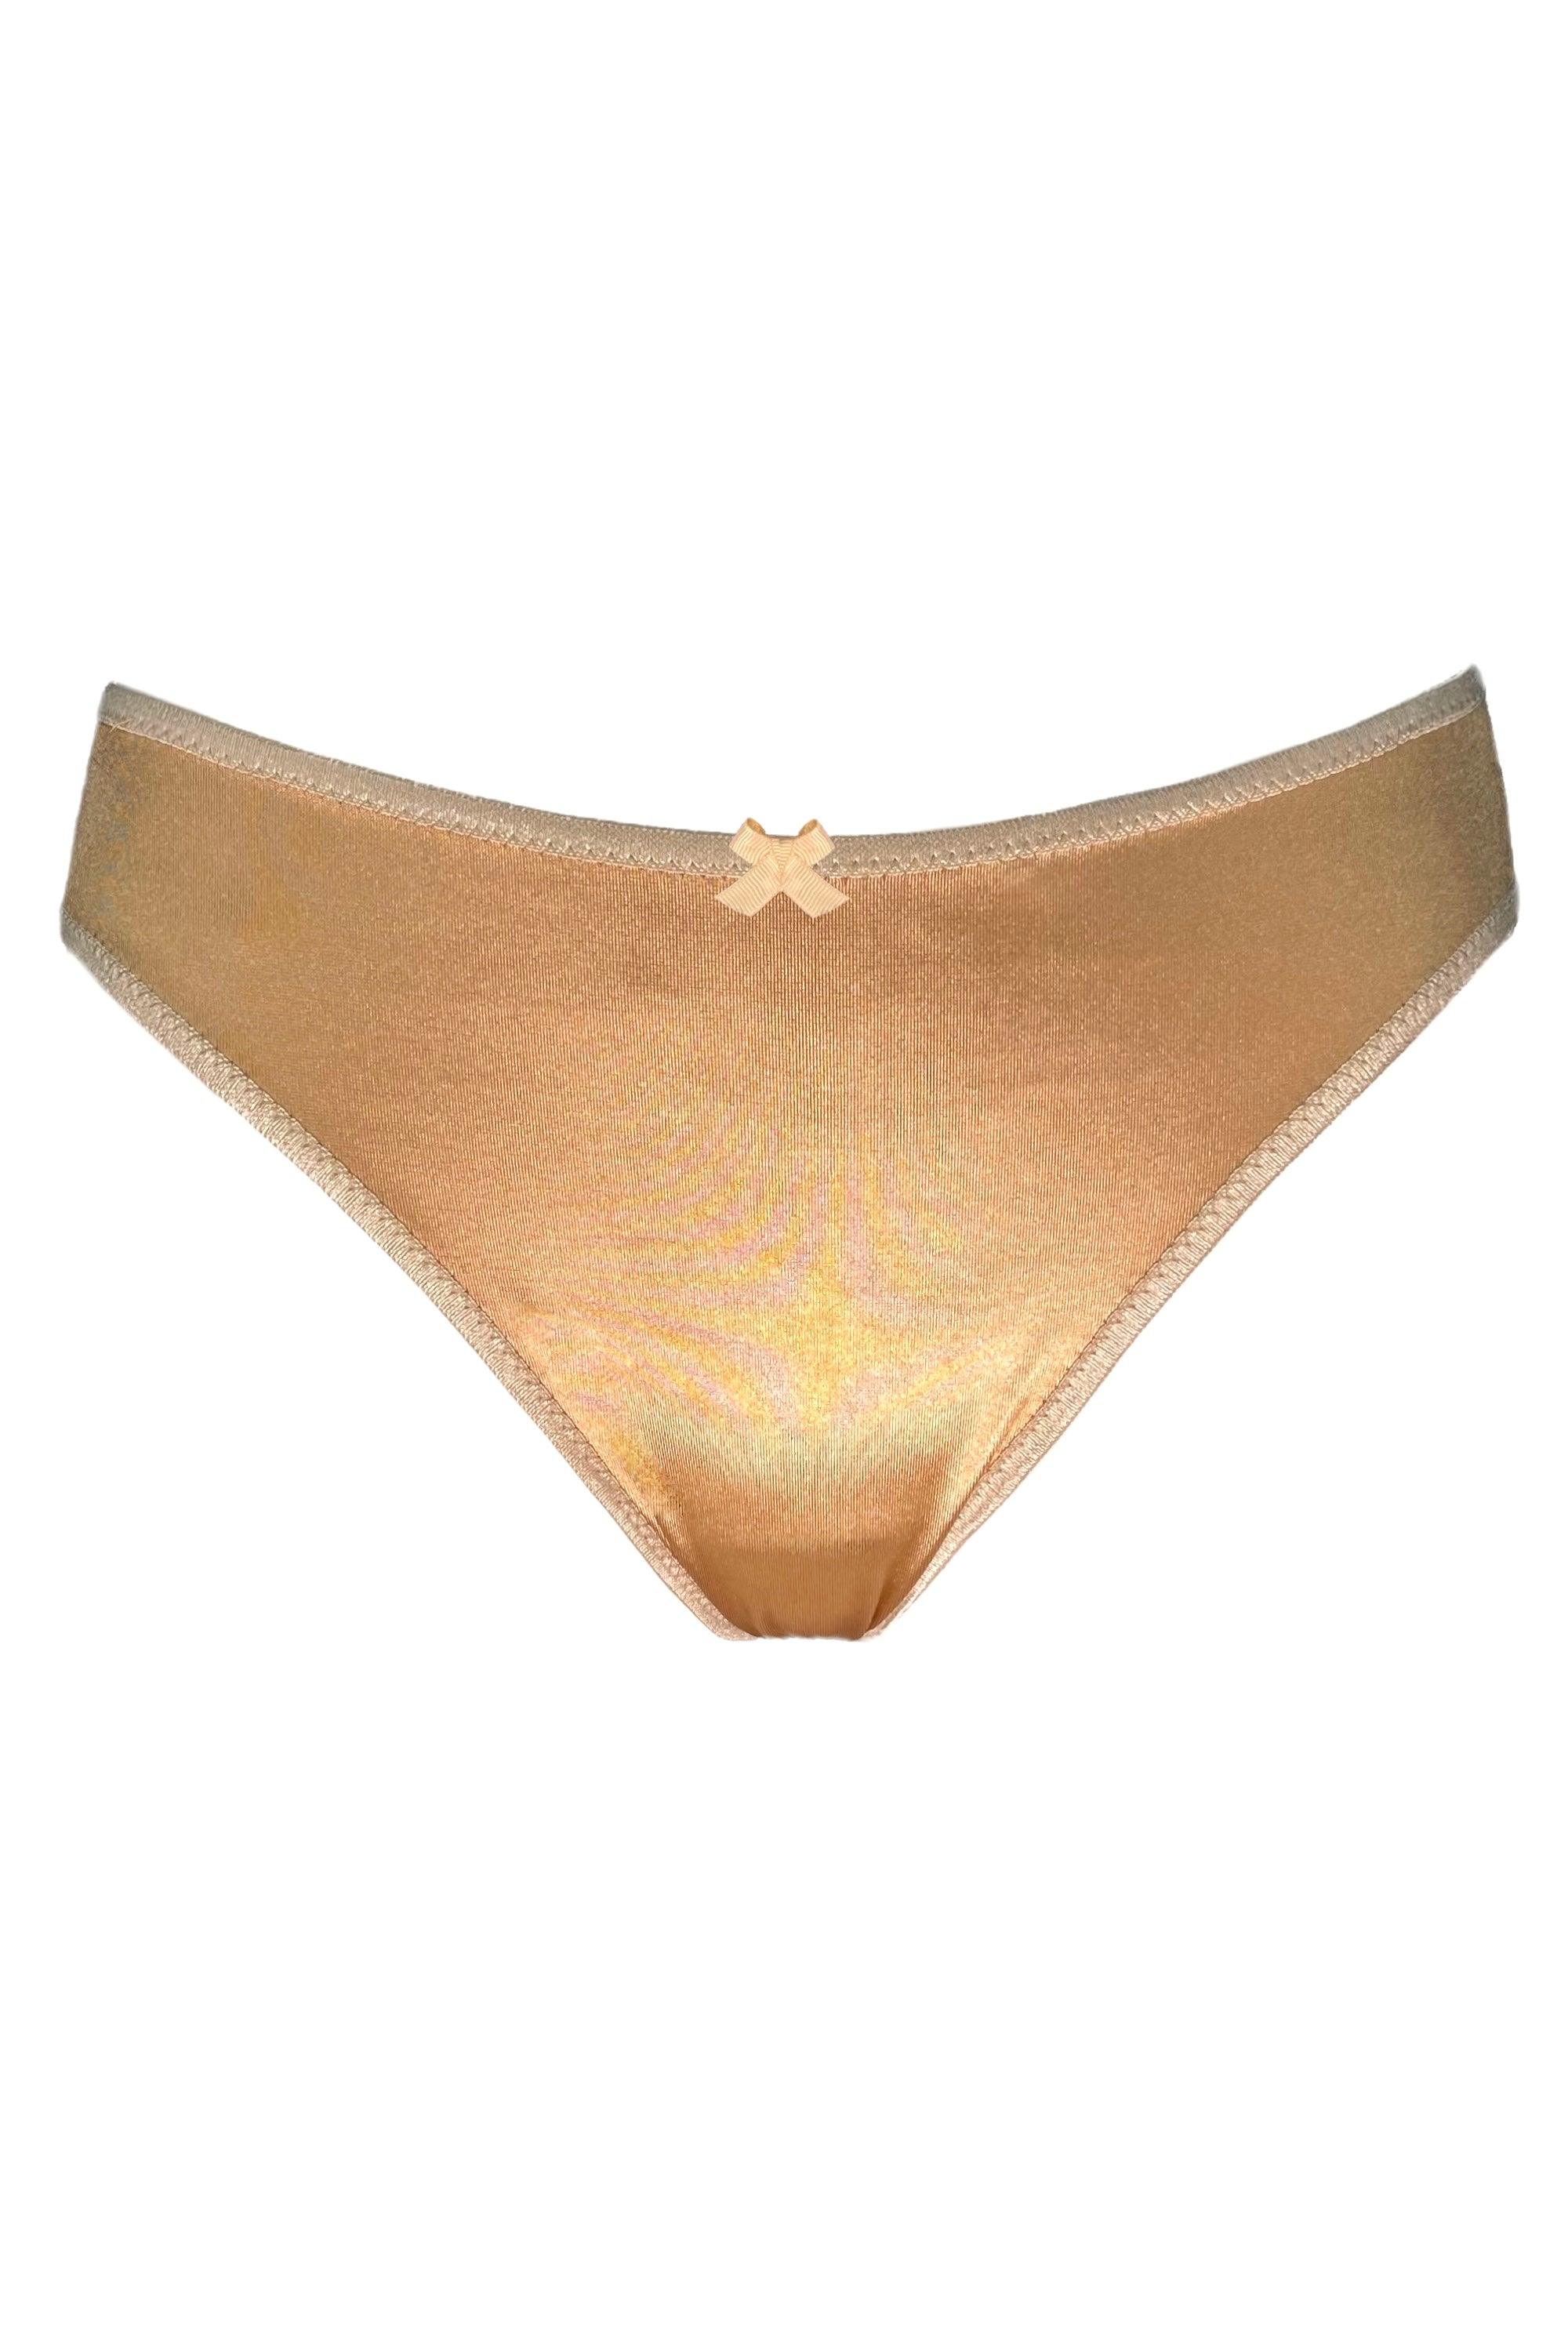 Valessa Gloss Gold slip panties - yesUndress